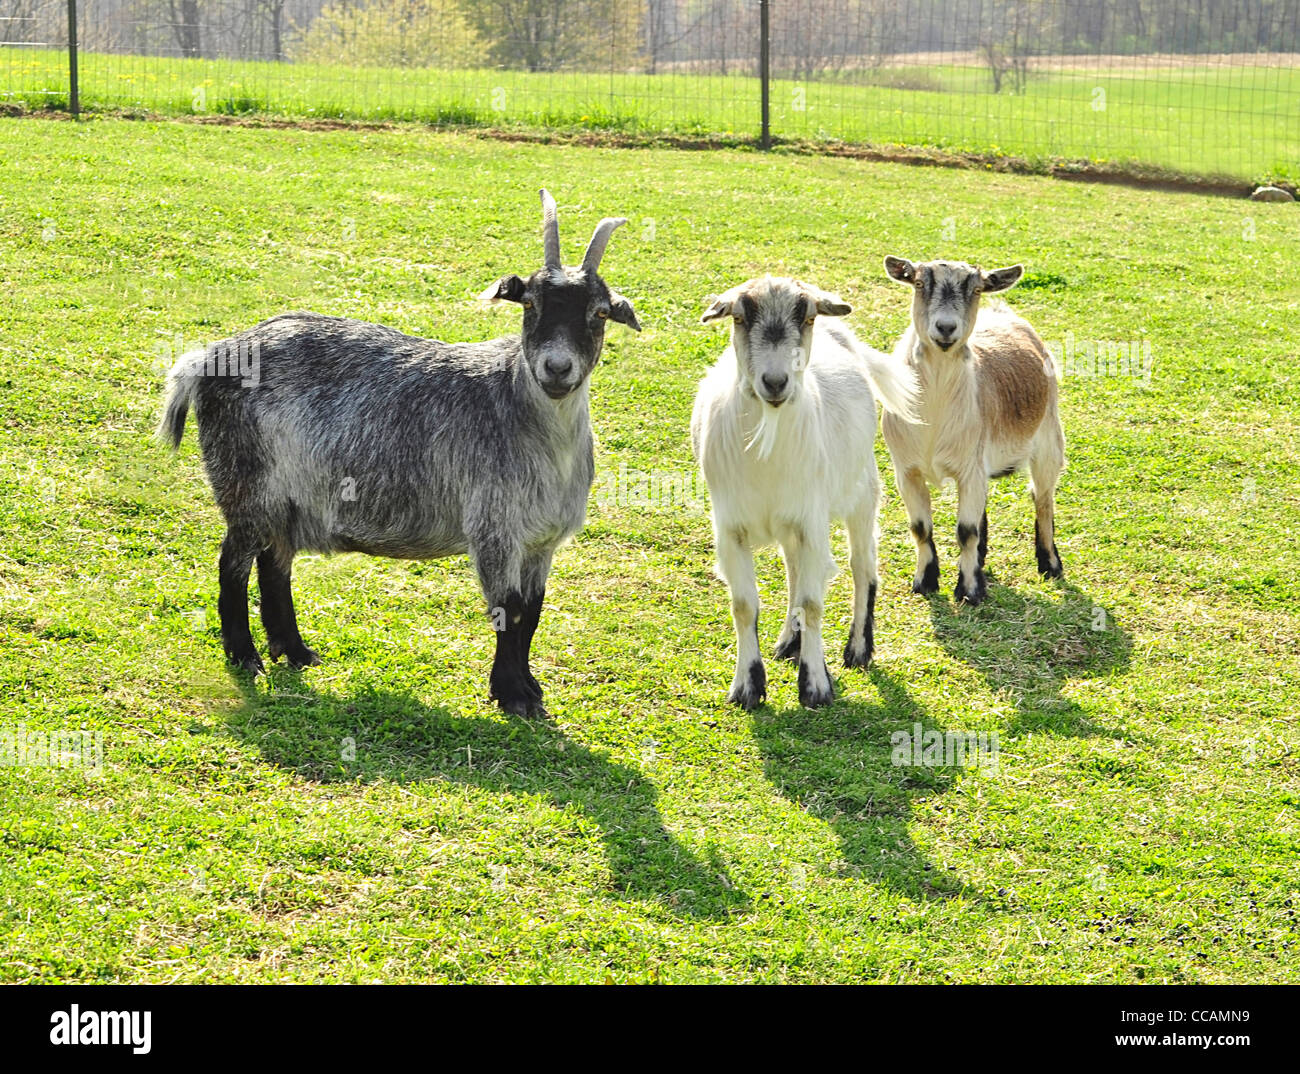 Les chèvres dans la ferme Banque D'Images